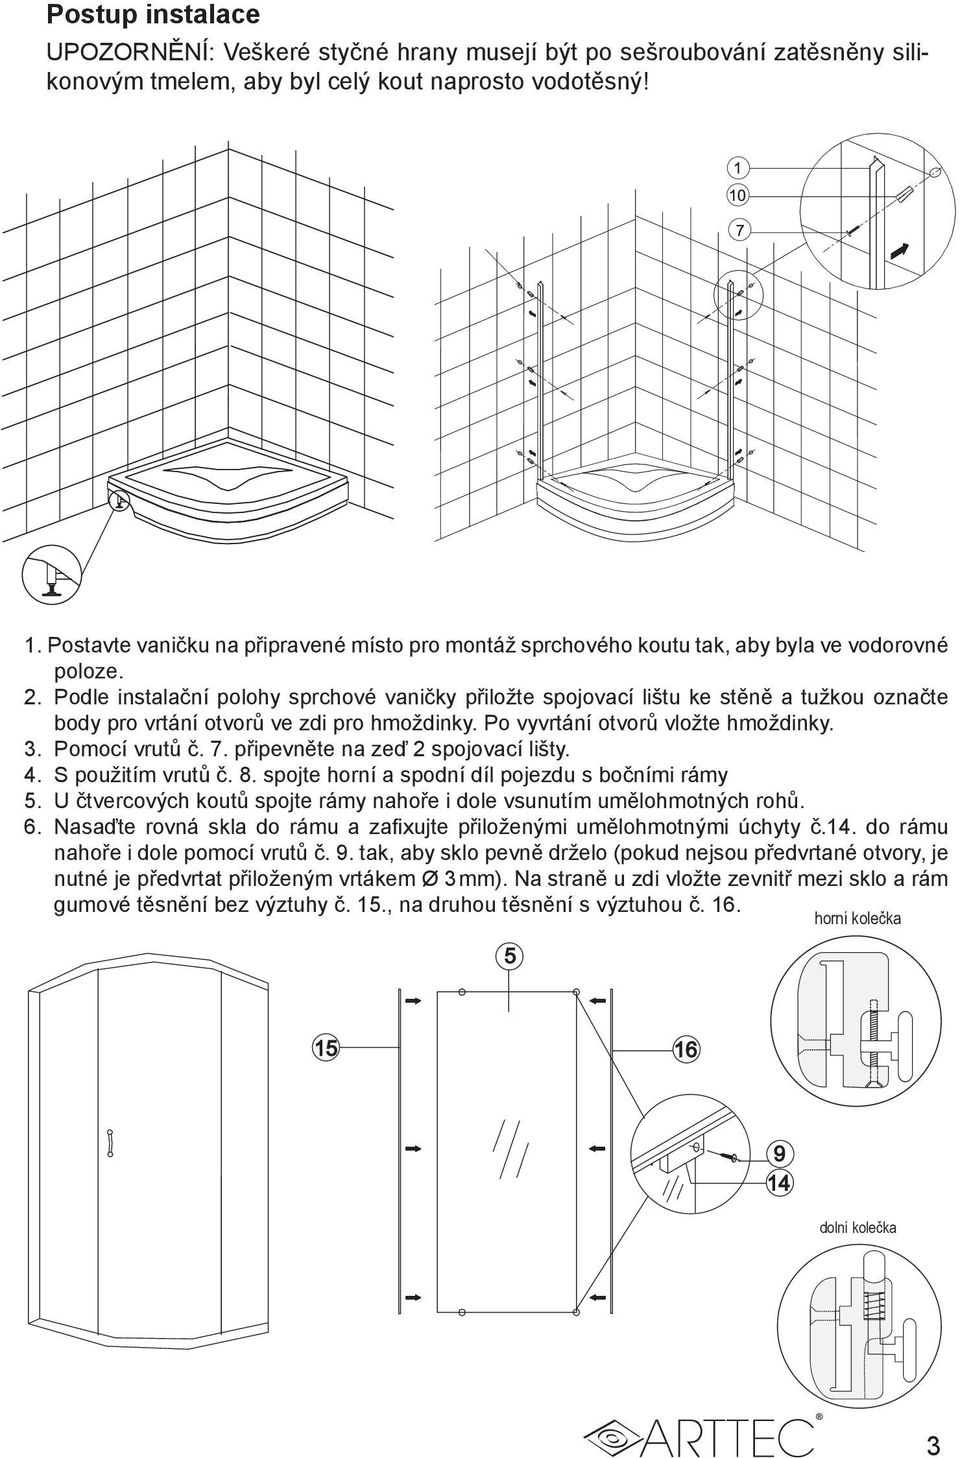 Podle instalační polohy sprchové vaničky přiložte spojovací lištu ke stěně a tužkou označte body pro vrtání otvorů ve zdi pro hmoždinky. Po vyvrtání otvorů vložte hmoždinky. 3. Pomocí vrutů č. 7.